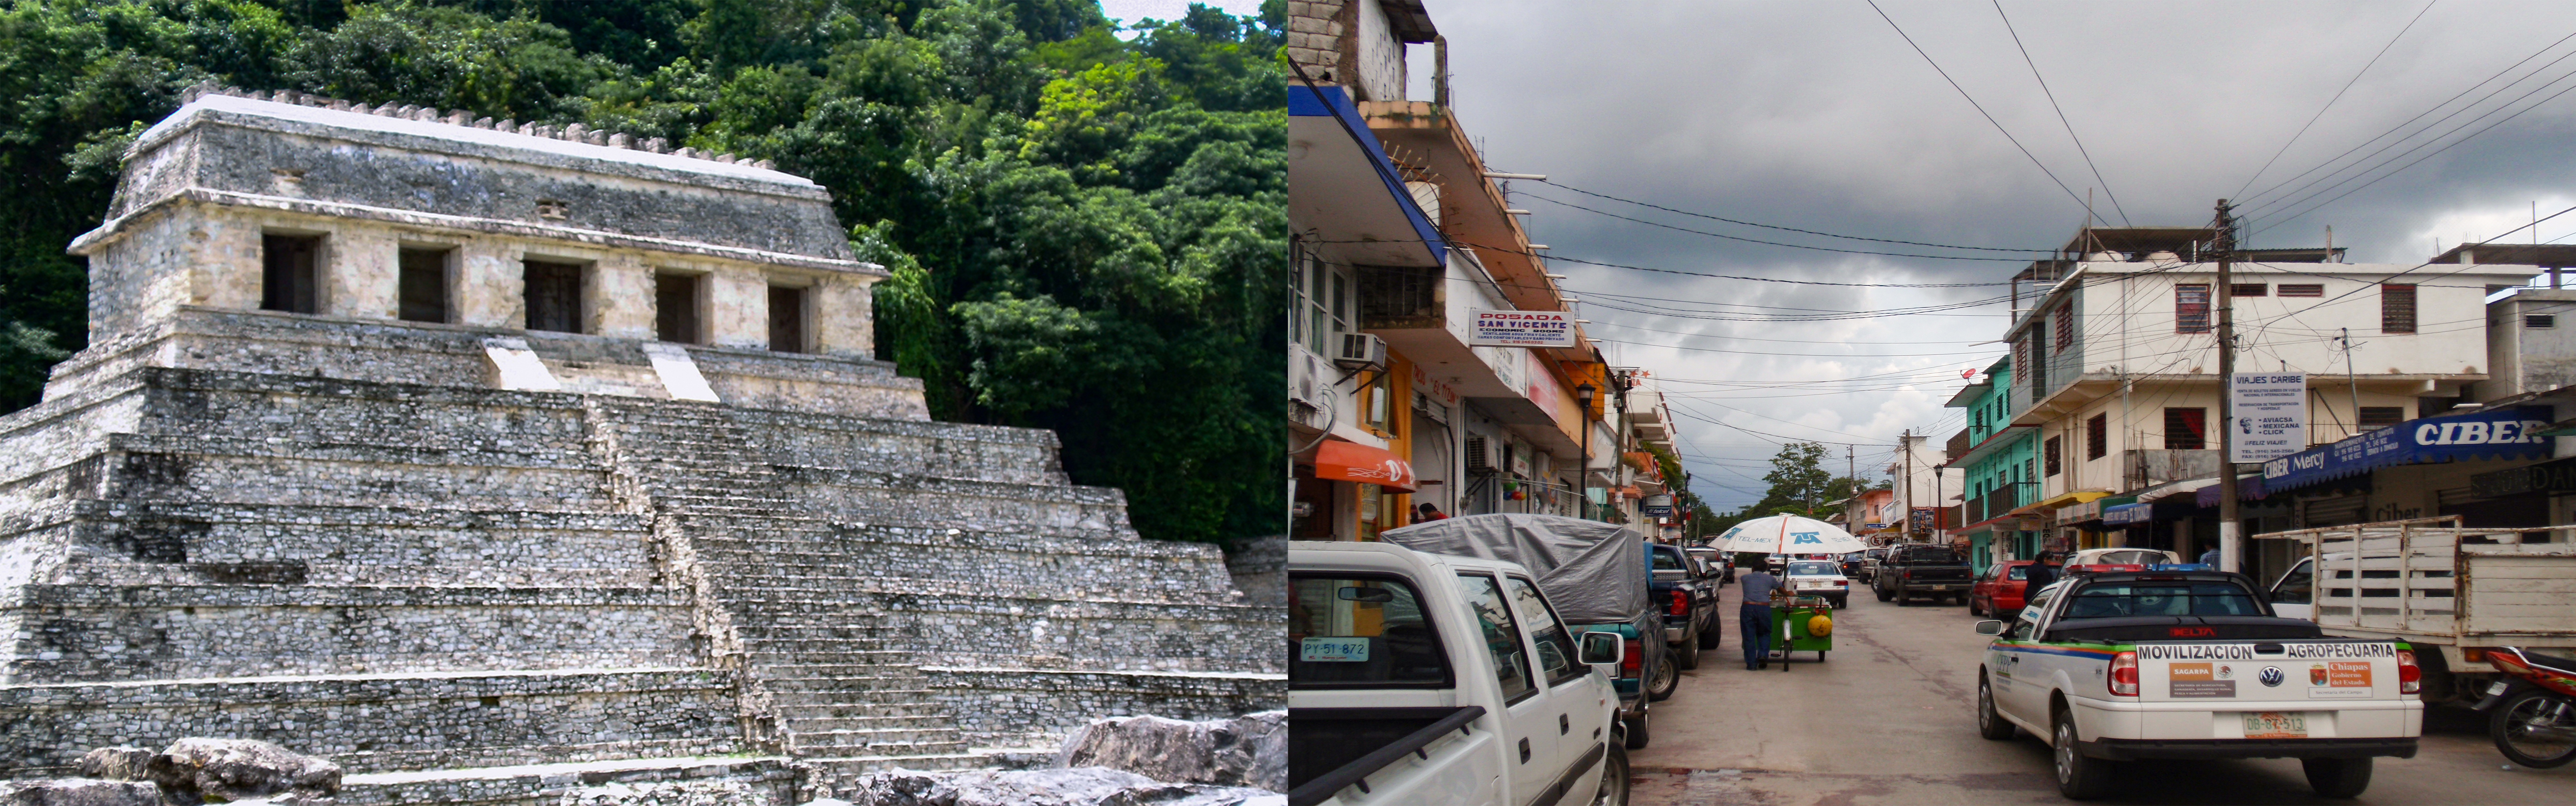 Palenque építészete 2010 éve és 2010-ben